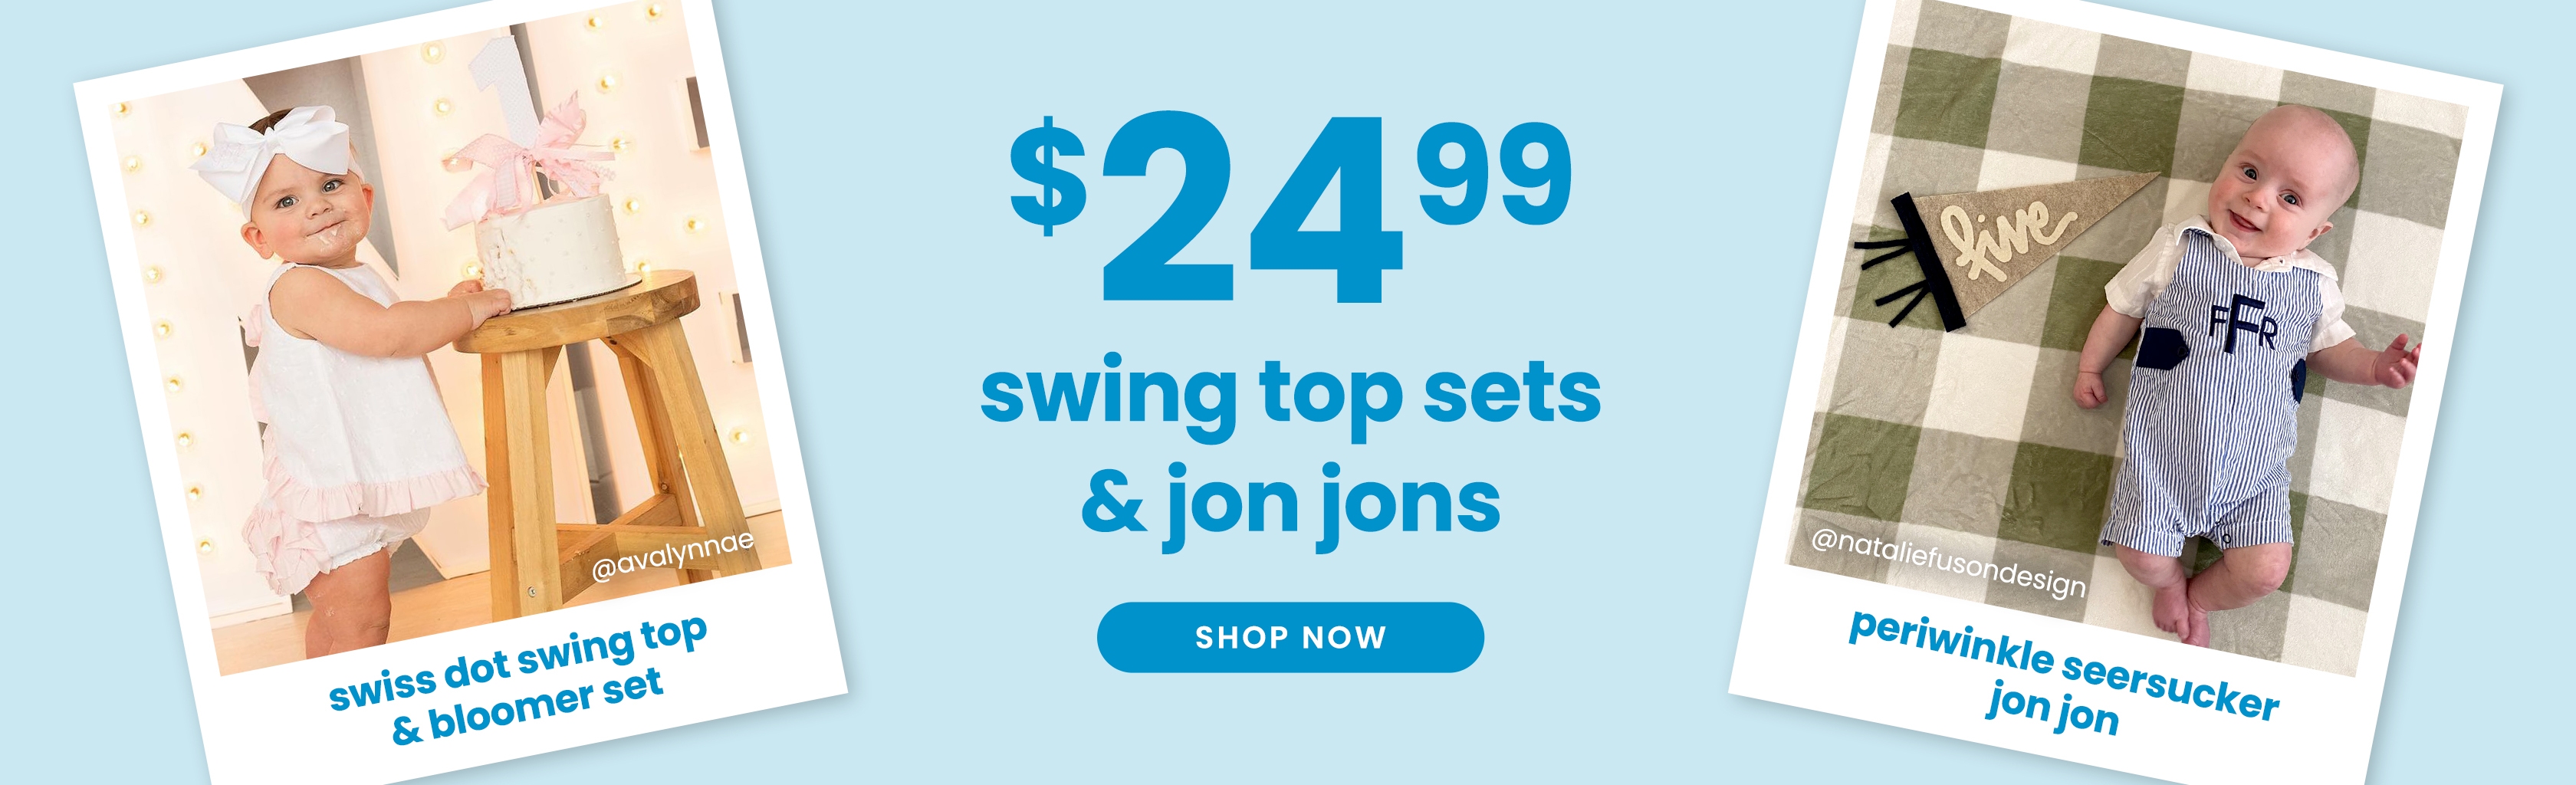 Swing Top Sets & Jon Jons